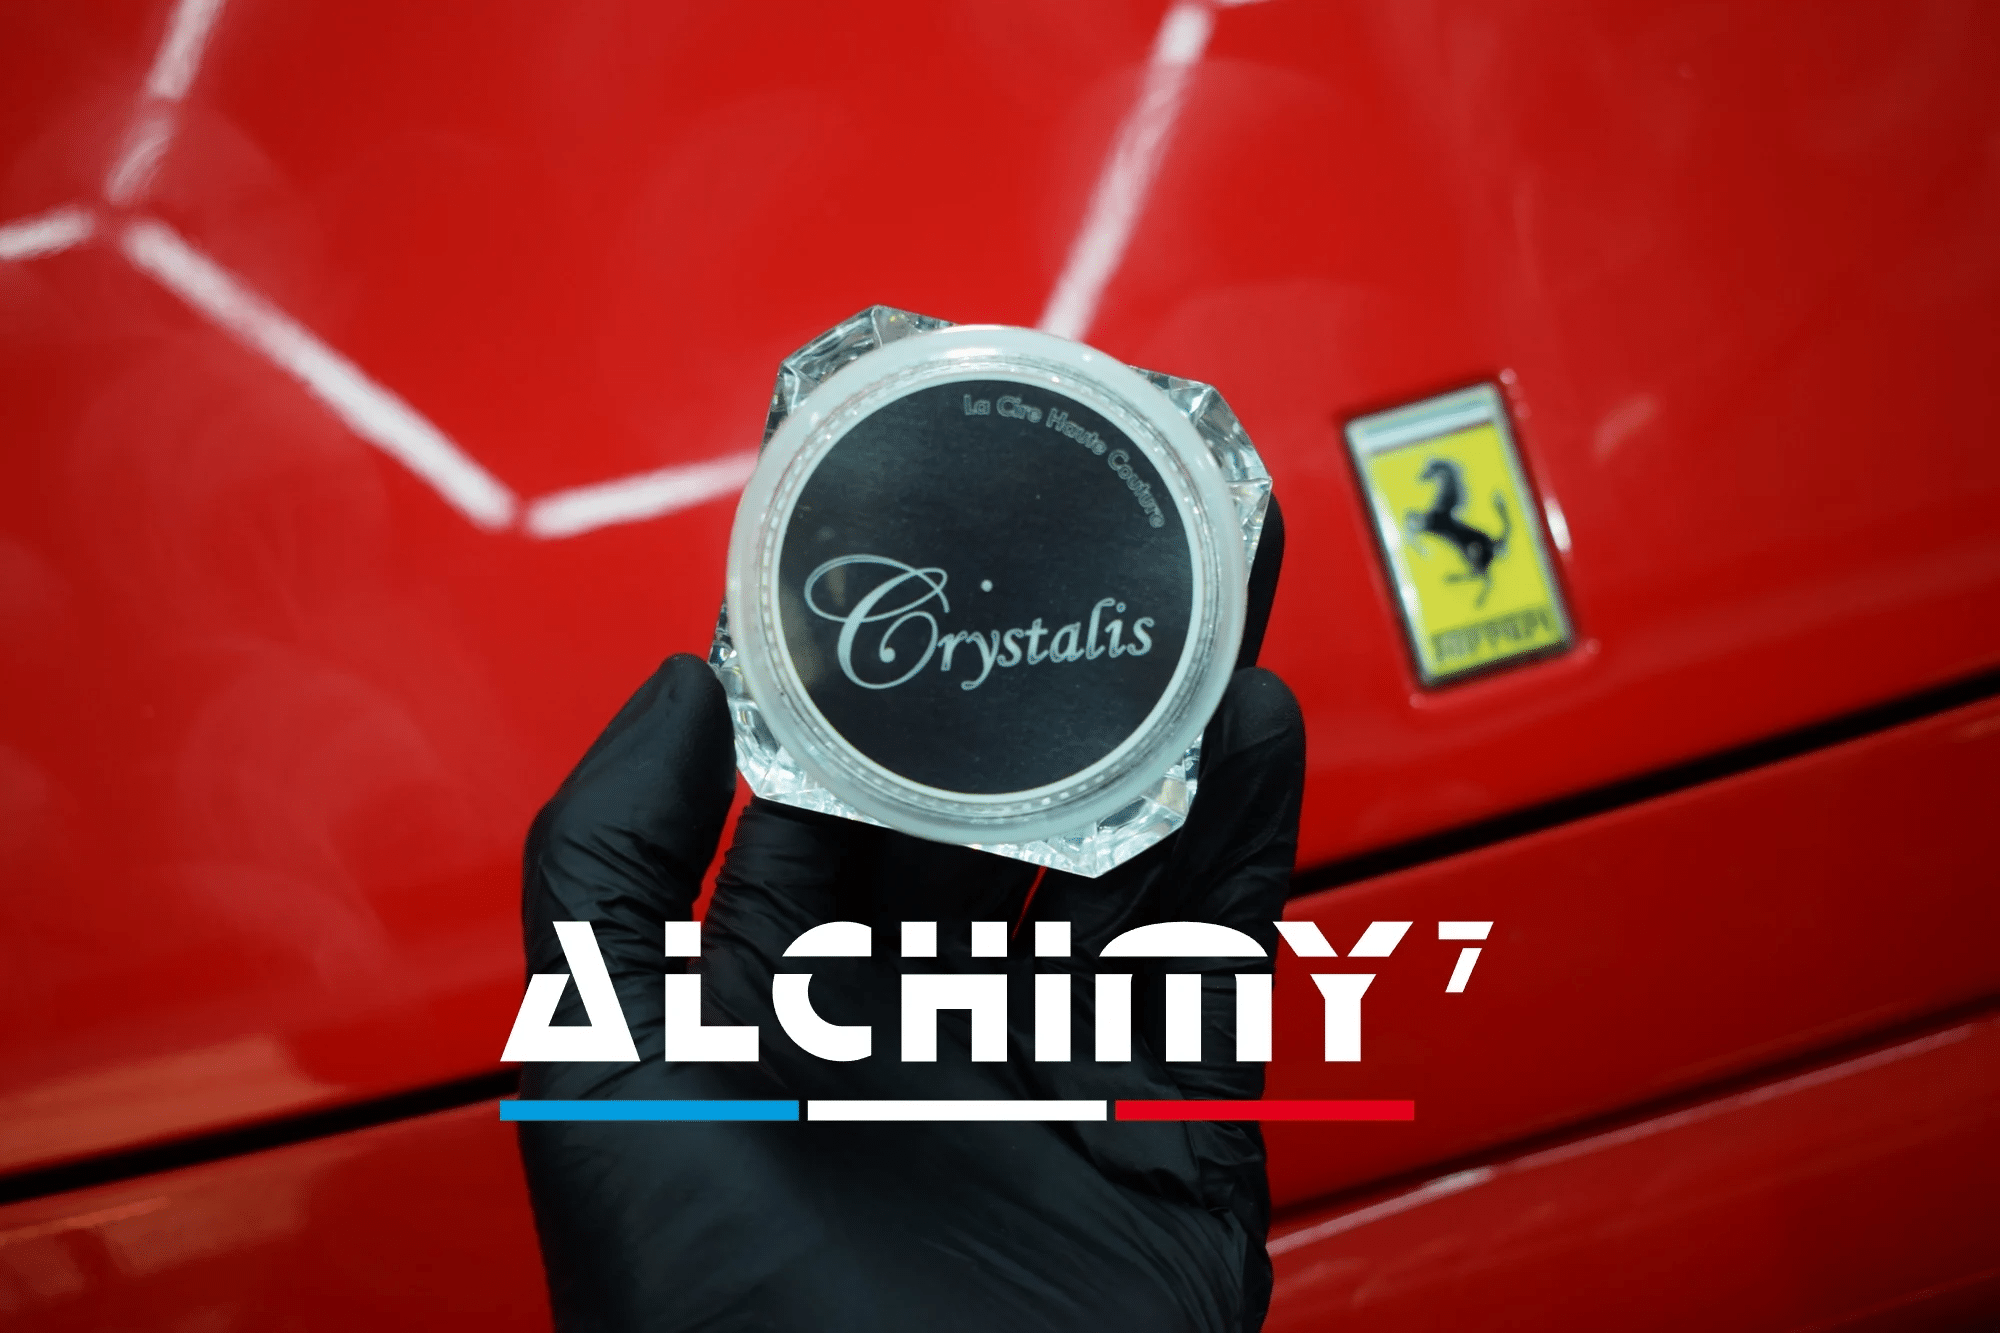 Nettoyant intérieur universel de voiture NIU Alchimy7– Akrro Detailing